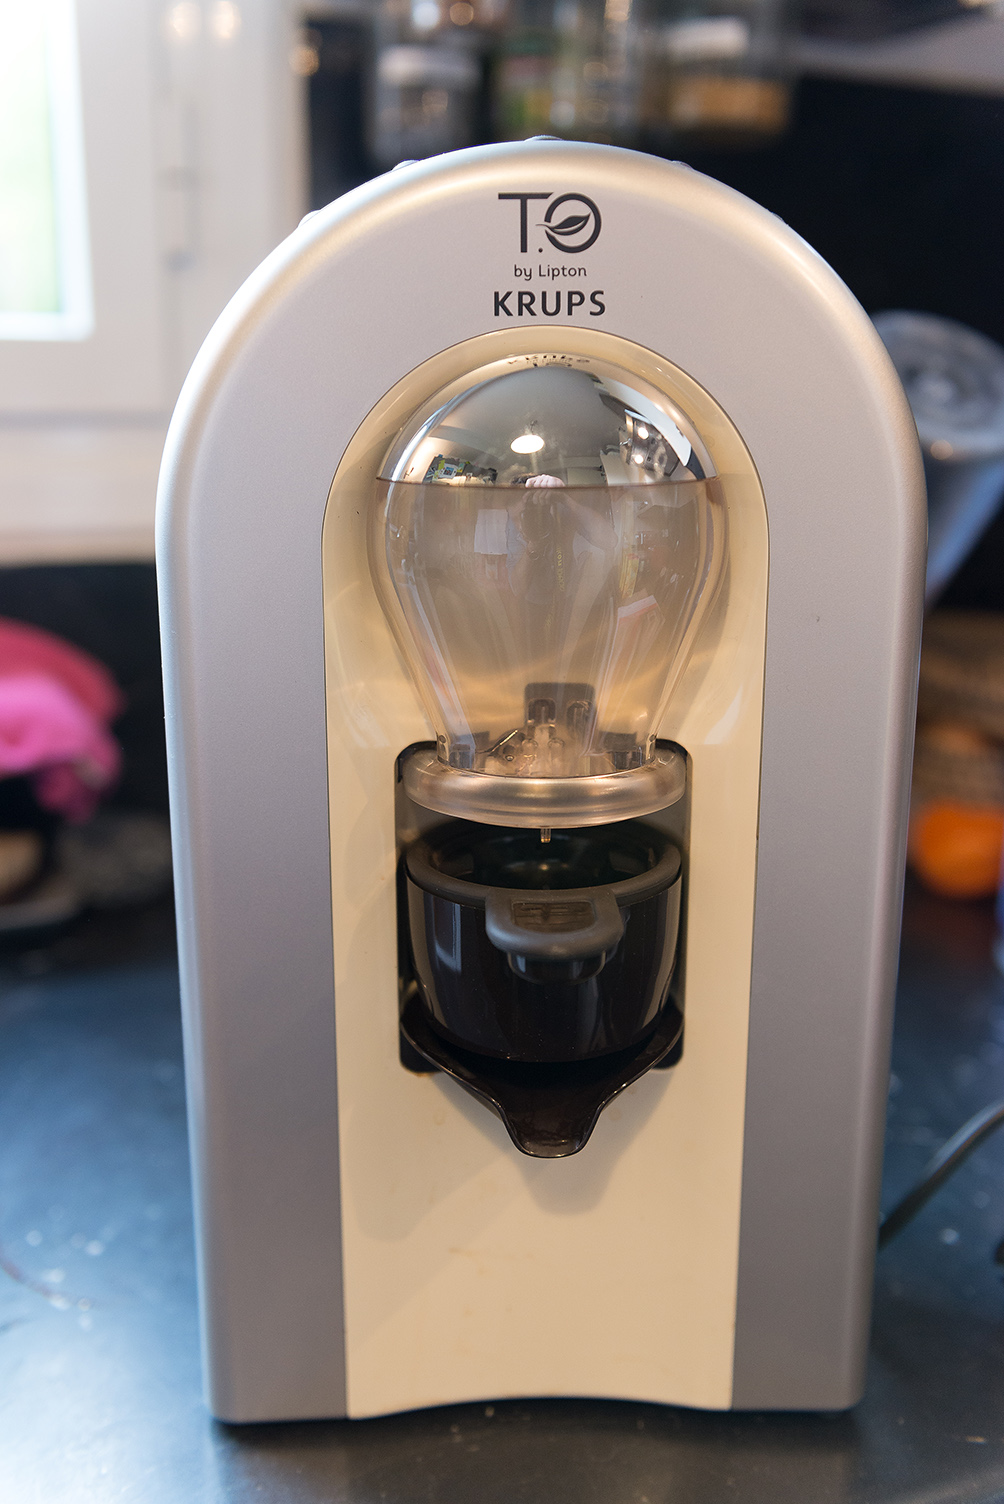 Machine à thé Krups T.O By Lipton Vert Anis TES00300